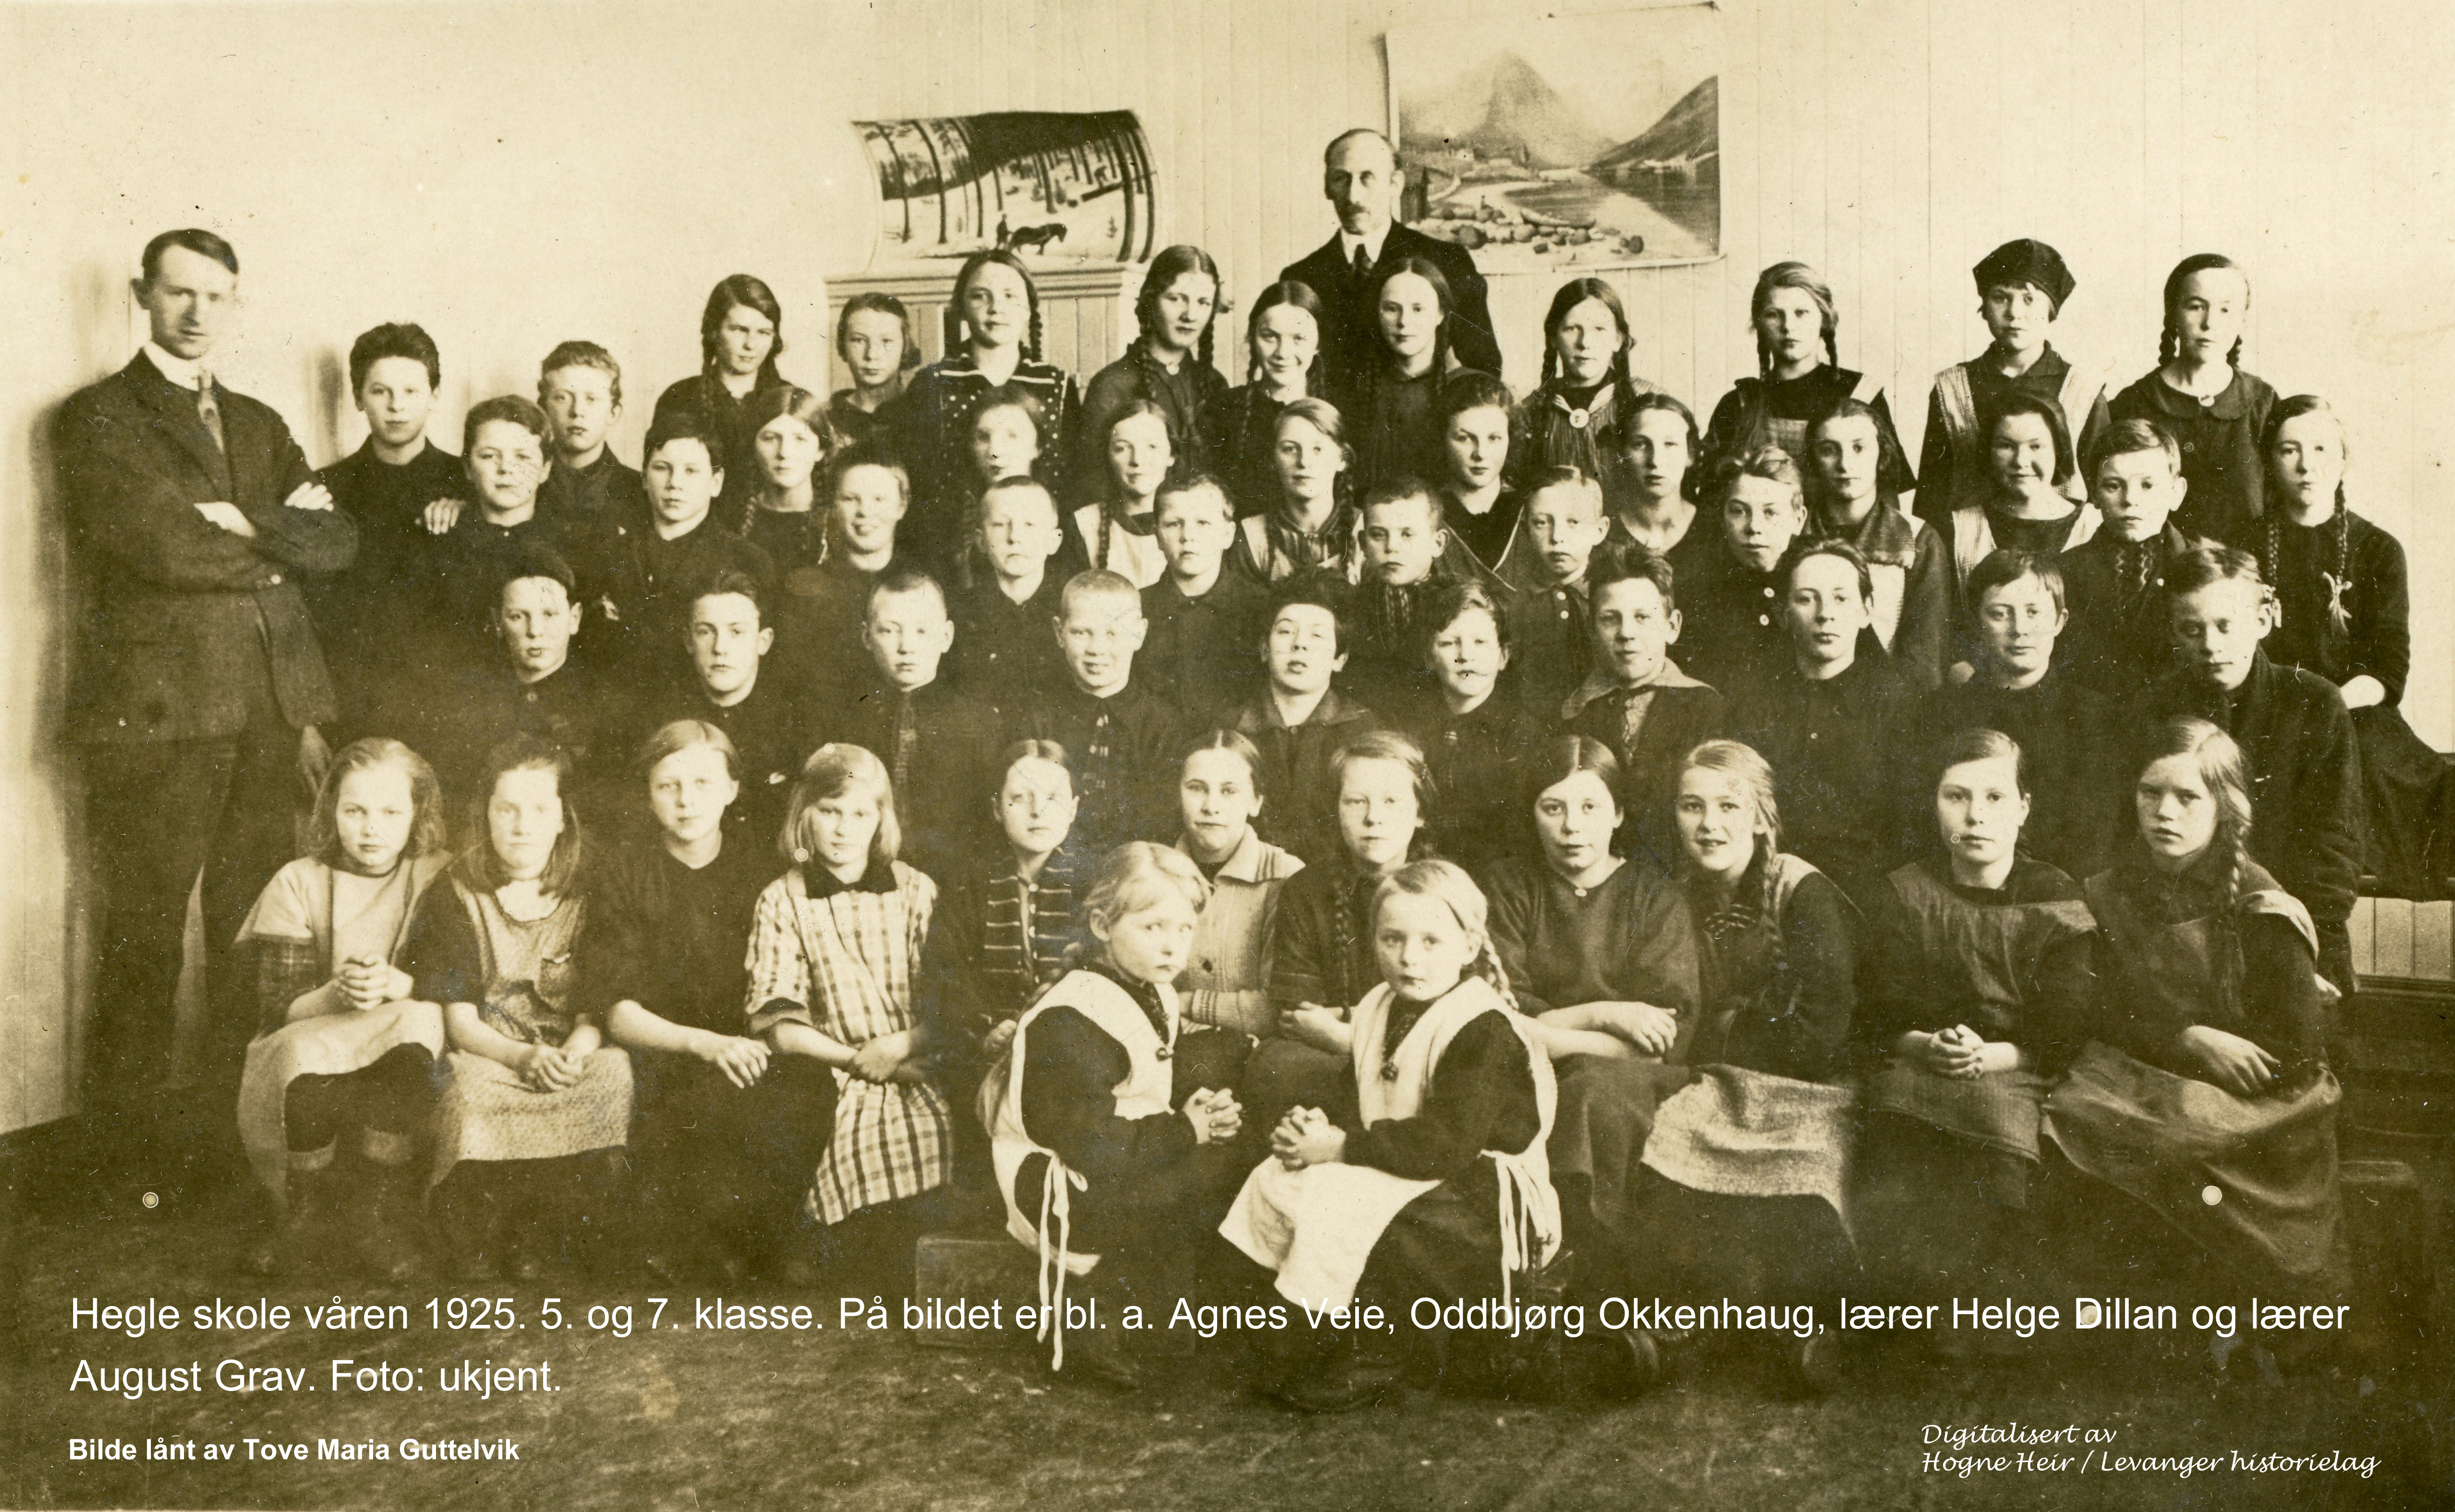 Hegle skole våren 1925. 5. og 7. klasse